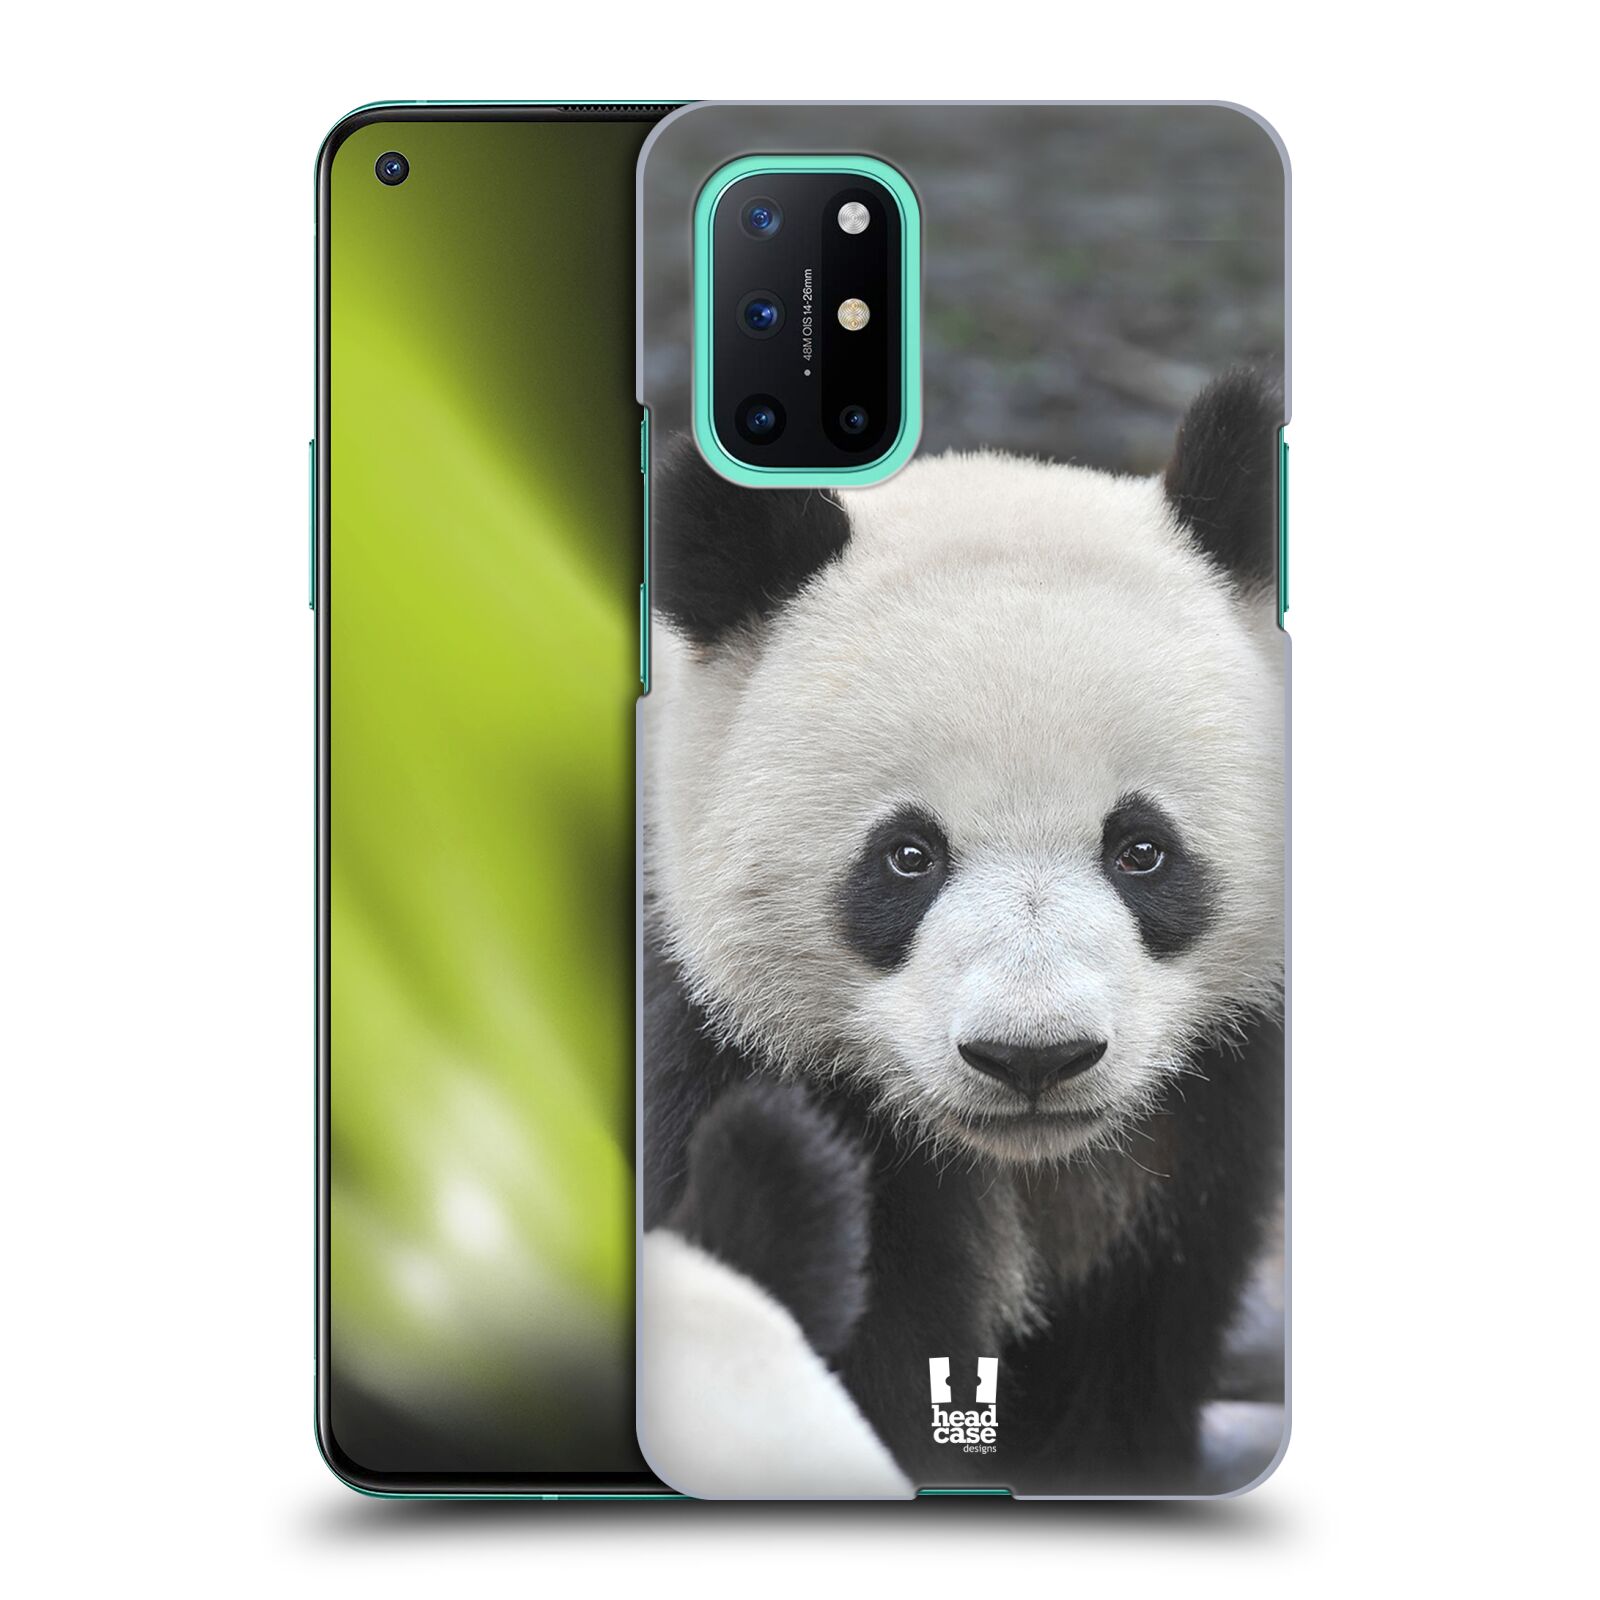 Zadní obal pro mobil OnePlus 8T - HEAD CASE - Svět zvířat medvěd panda